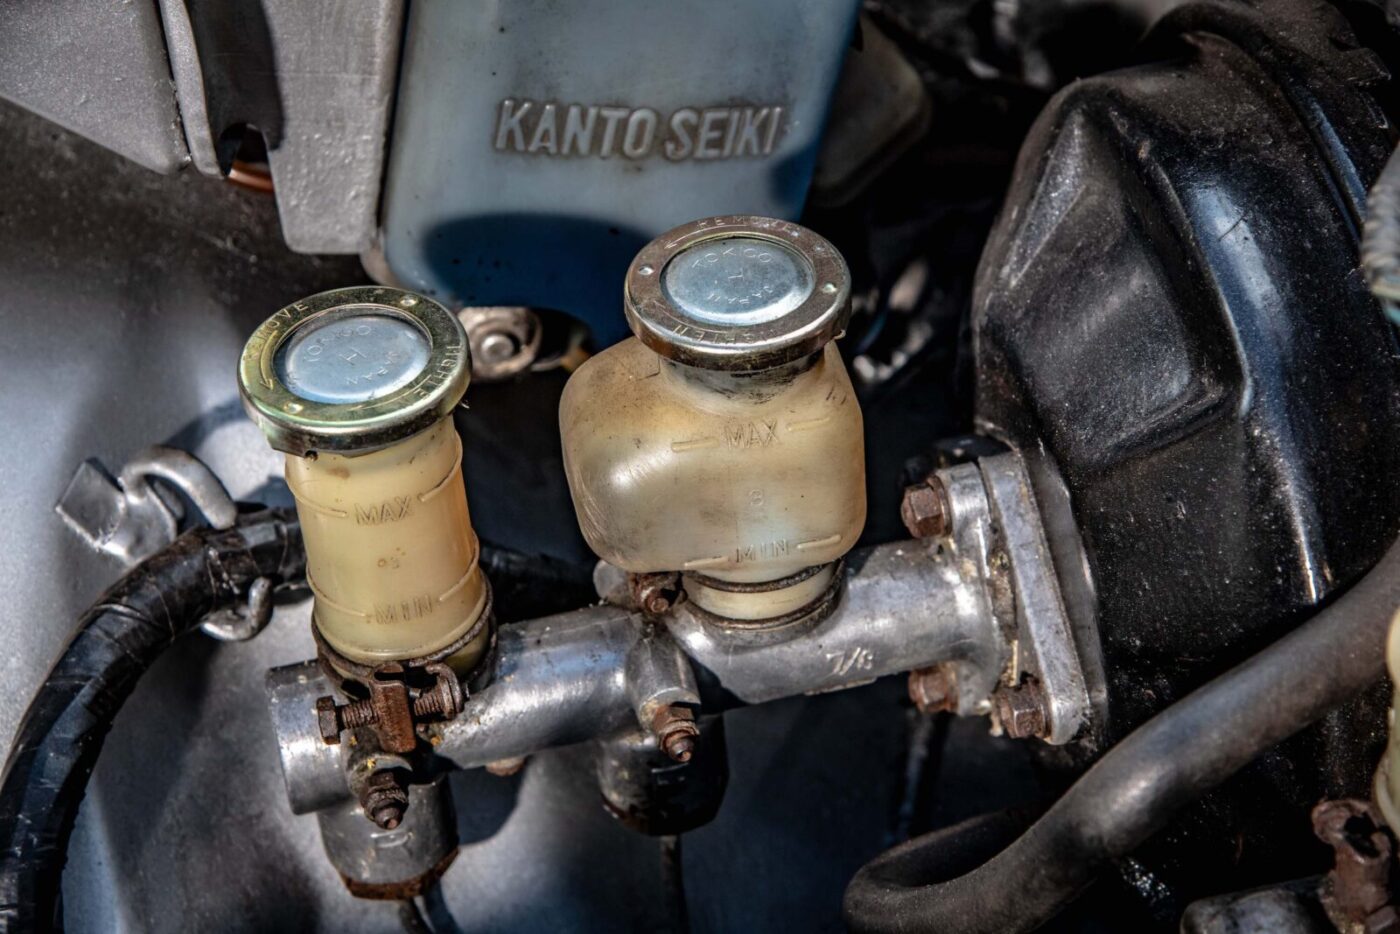 Datsun 260Z engine detail